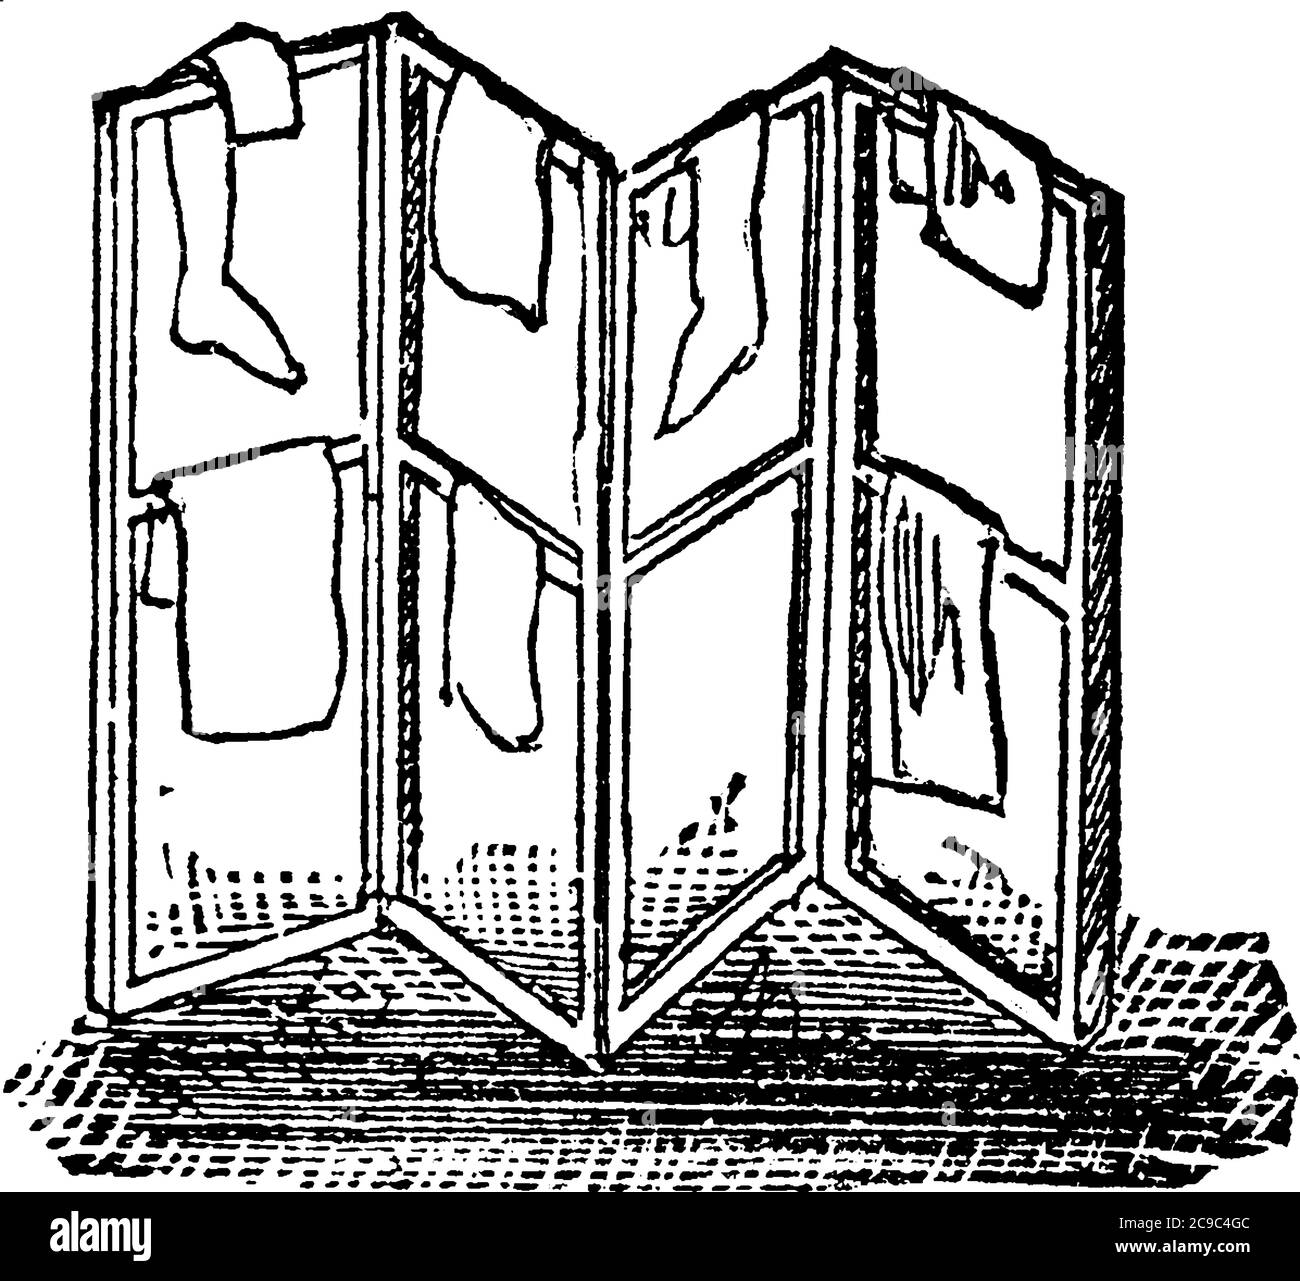 Una rappresentazione tipica di una rastrelliera, di una cornice su cui sono disposti oggetti di abbigliamento, ecc., per l'essiccazione, il disegno di una linea d'annata o l'incisione di un illus Illustrazione Vettoriale